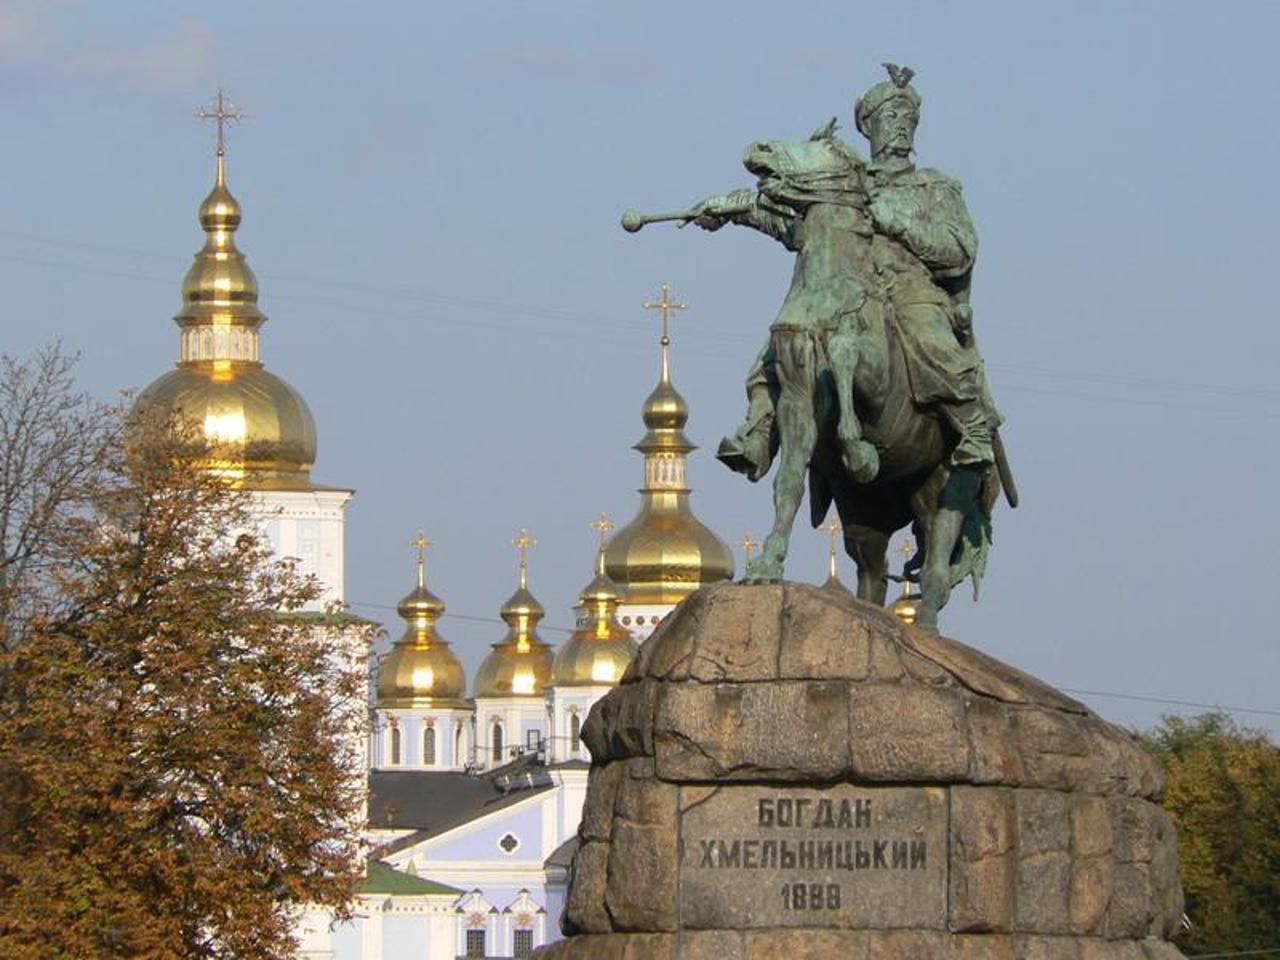 Monument to B. Khmelnytskyi, Kyiv